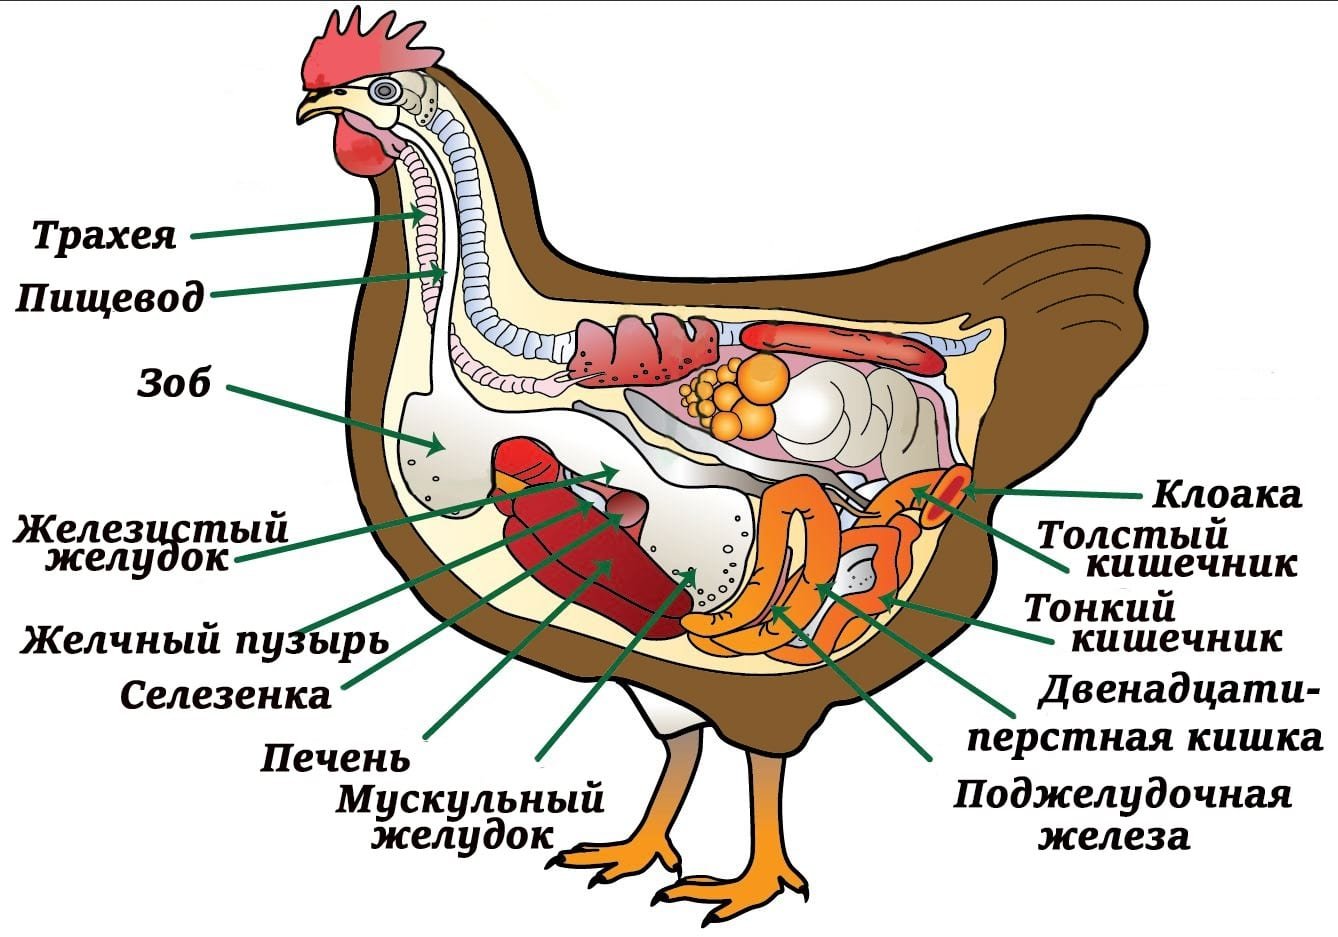 В зобу дыханье. Внутреннее строение курицы. Внутреннее строение птиц пищеварительная система. Анатомия строения курицы. Органы пищеварительной системы у птиц зоб.